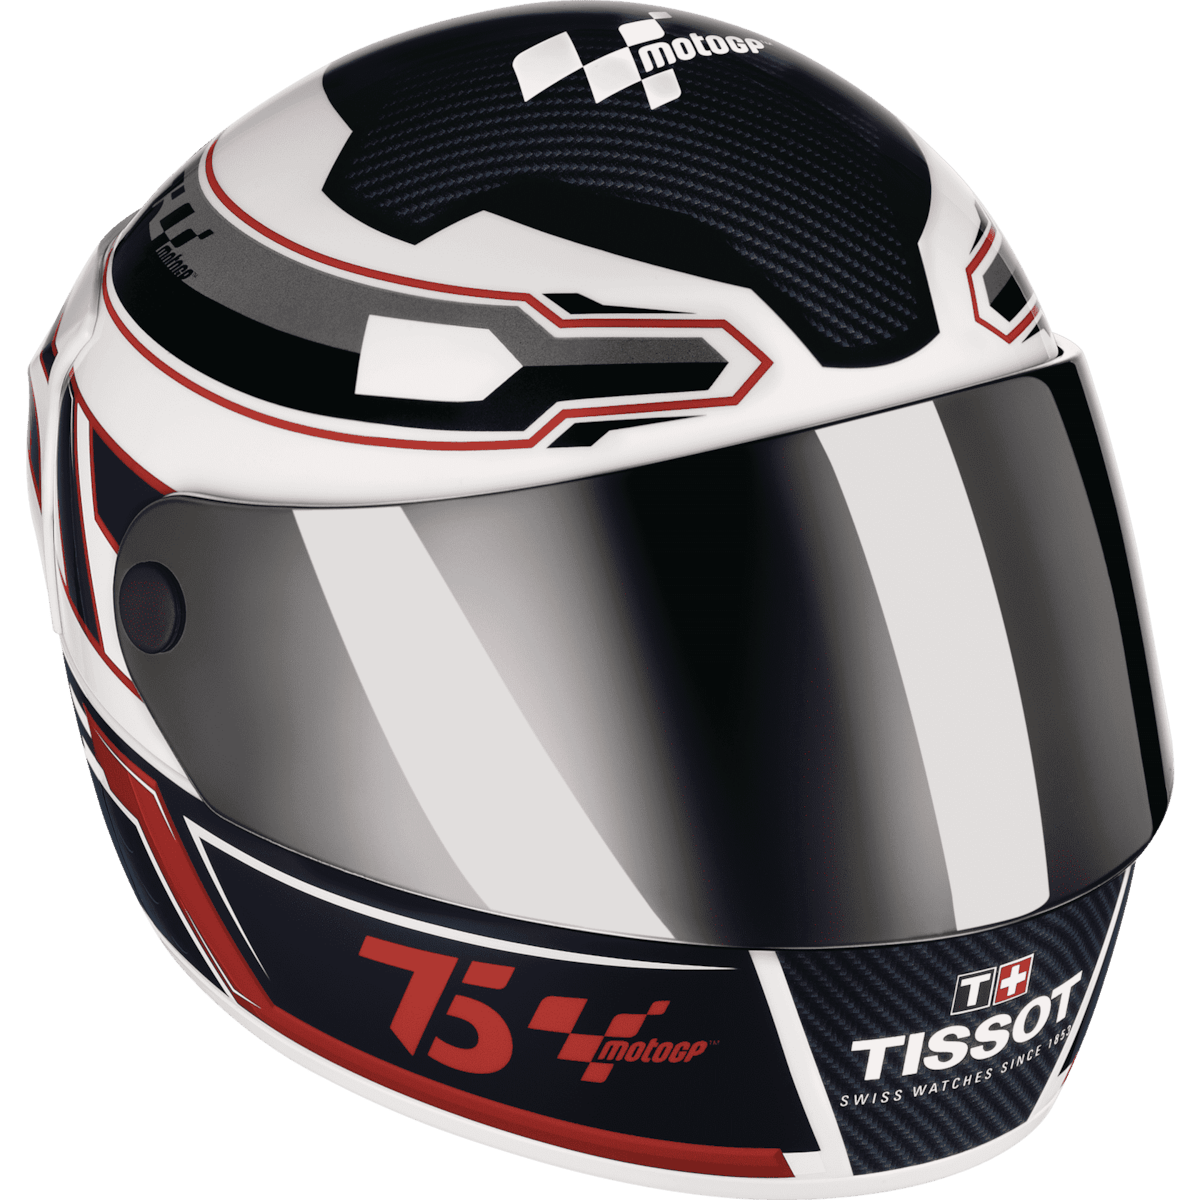 Tissot T-Race MOTOGP 2024 Automatic Chronograph Limited Edition Men's Watch T1414272704100